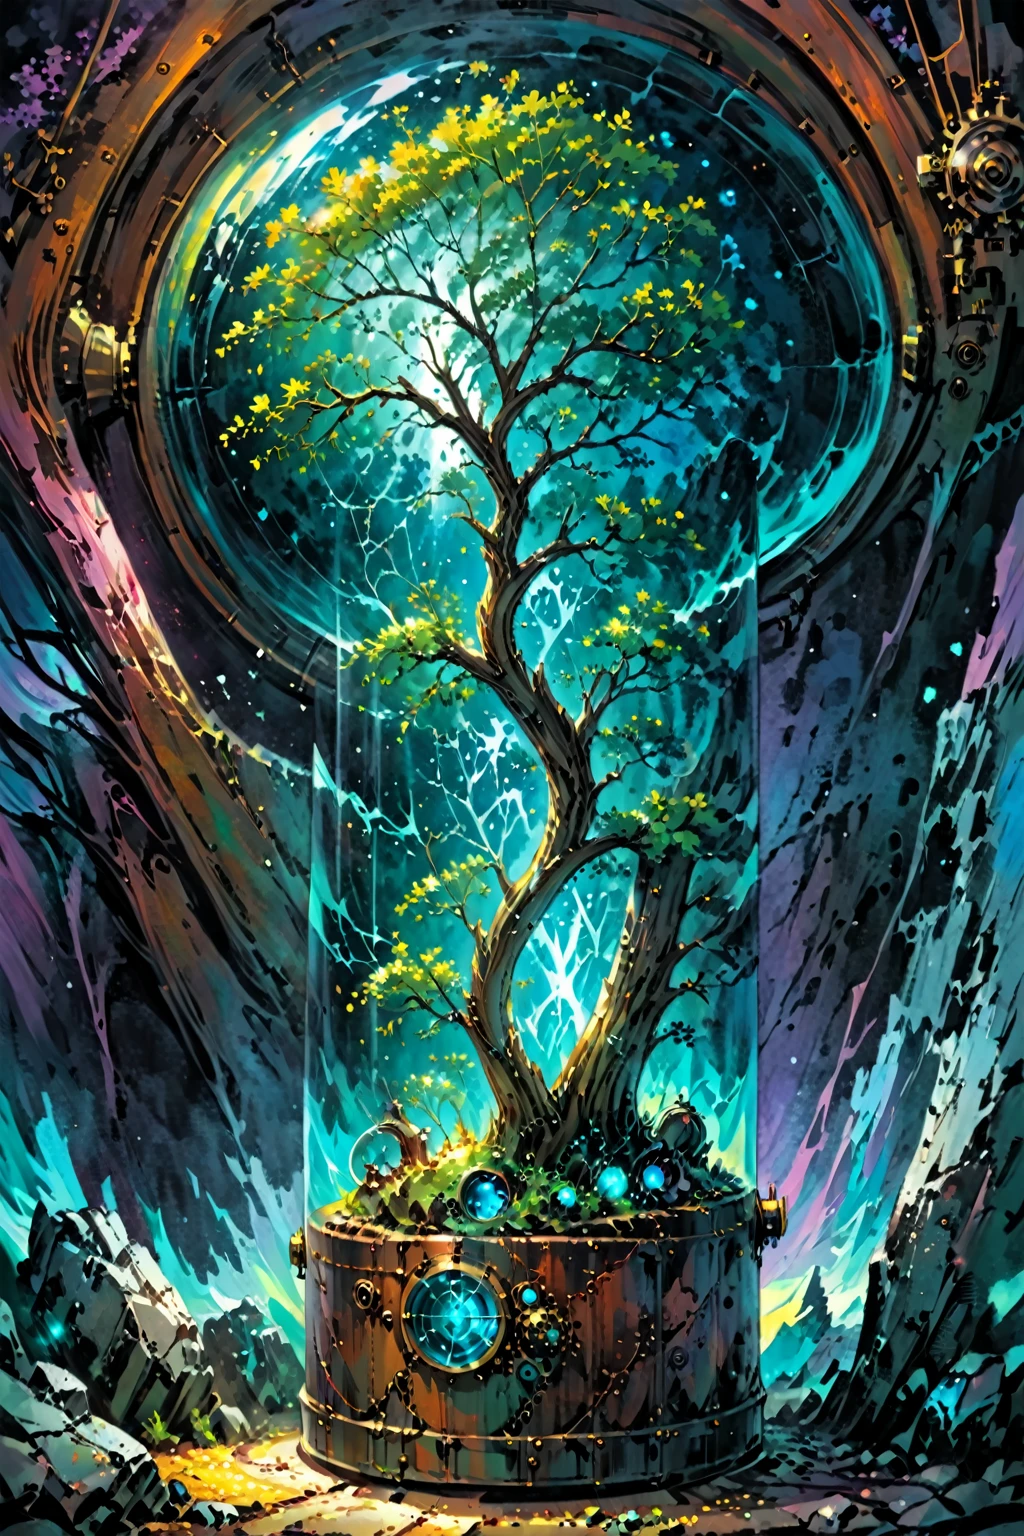 شجرة, اللون الوارد, مسيرة قسرية داخل حاوية Steampunk أسطوانية بها (زجاج ملون أزرق), العالم المطلي, خلفية اللوحة, من الطراز الأول مستوحاة من فيكتو نجاي, غير حقيقي